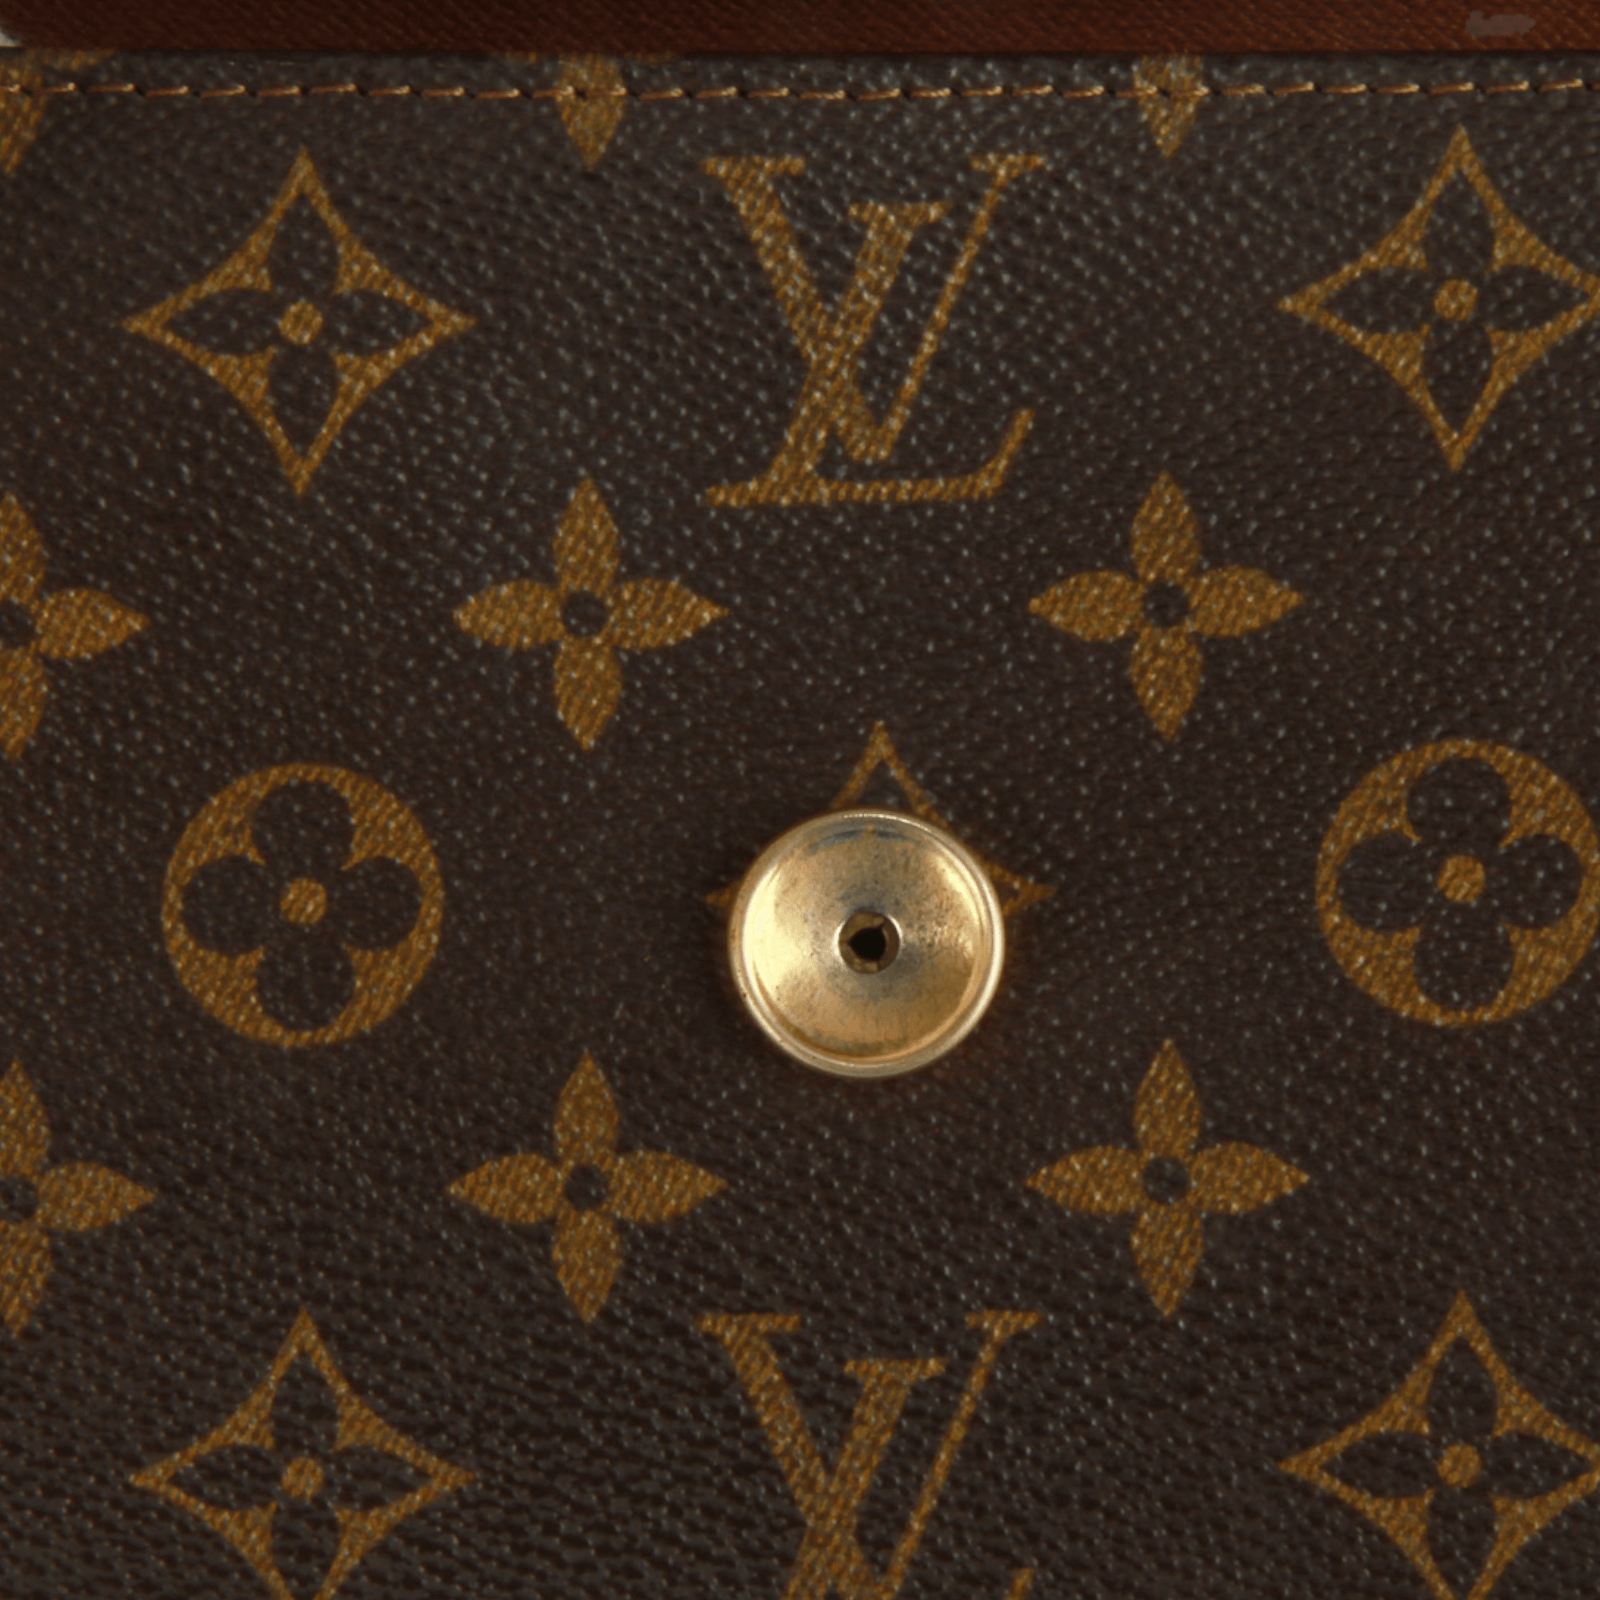 Louis Vuitton Portefeuille zippy – The Brand Collector